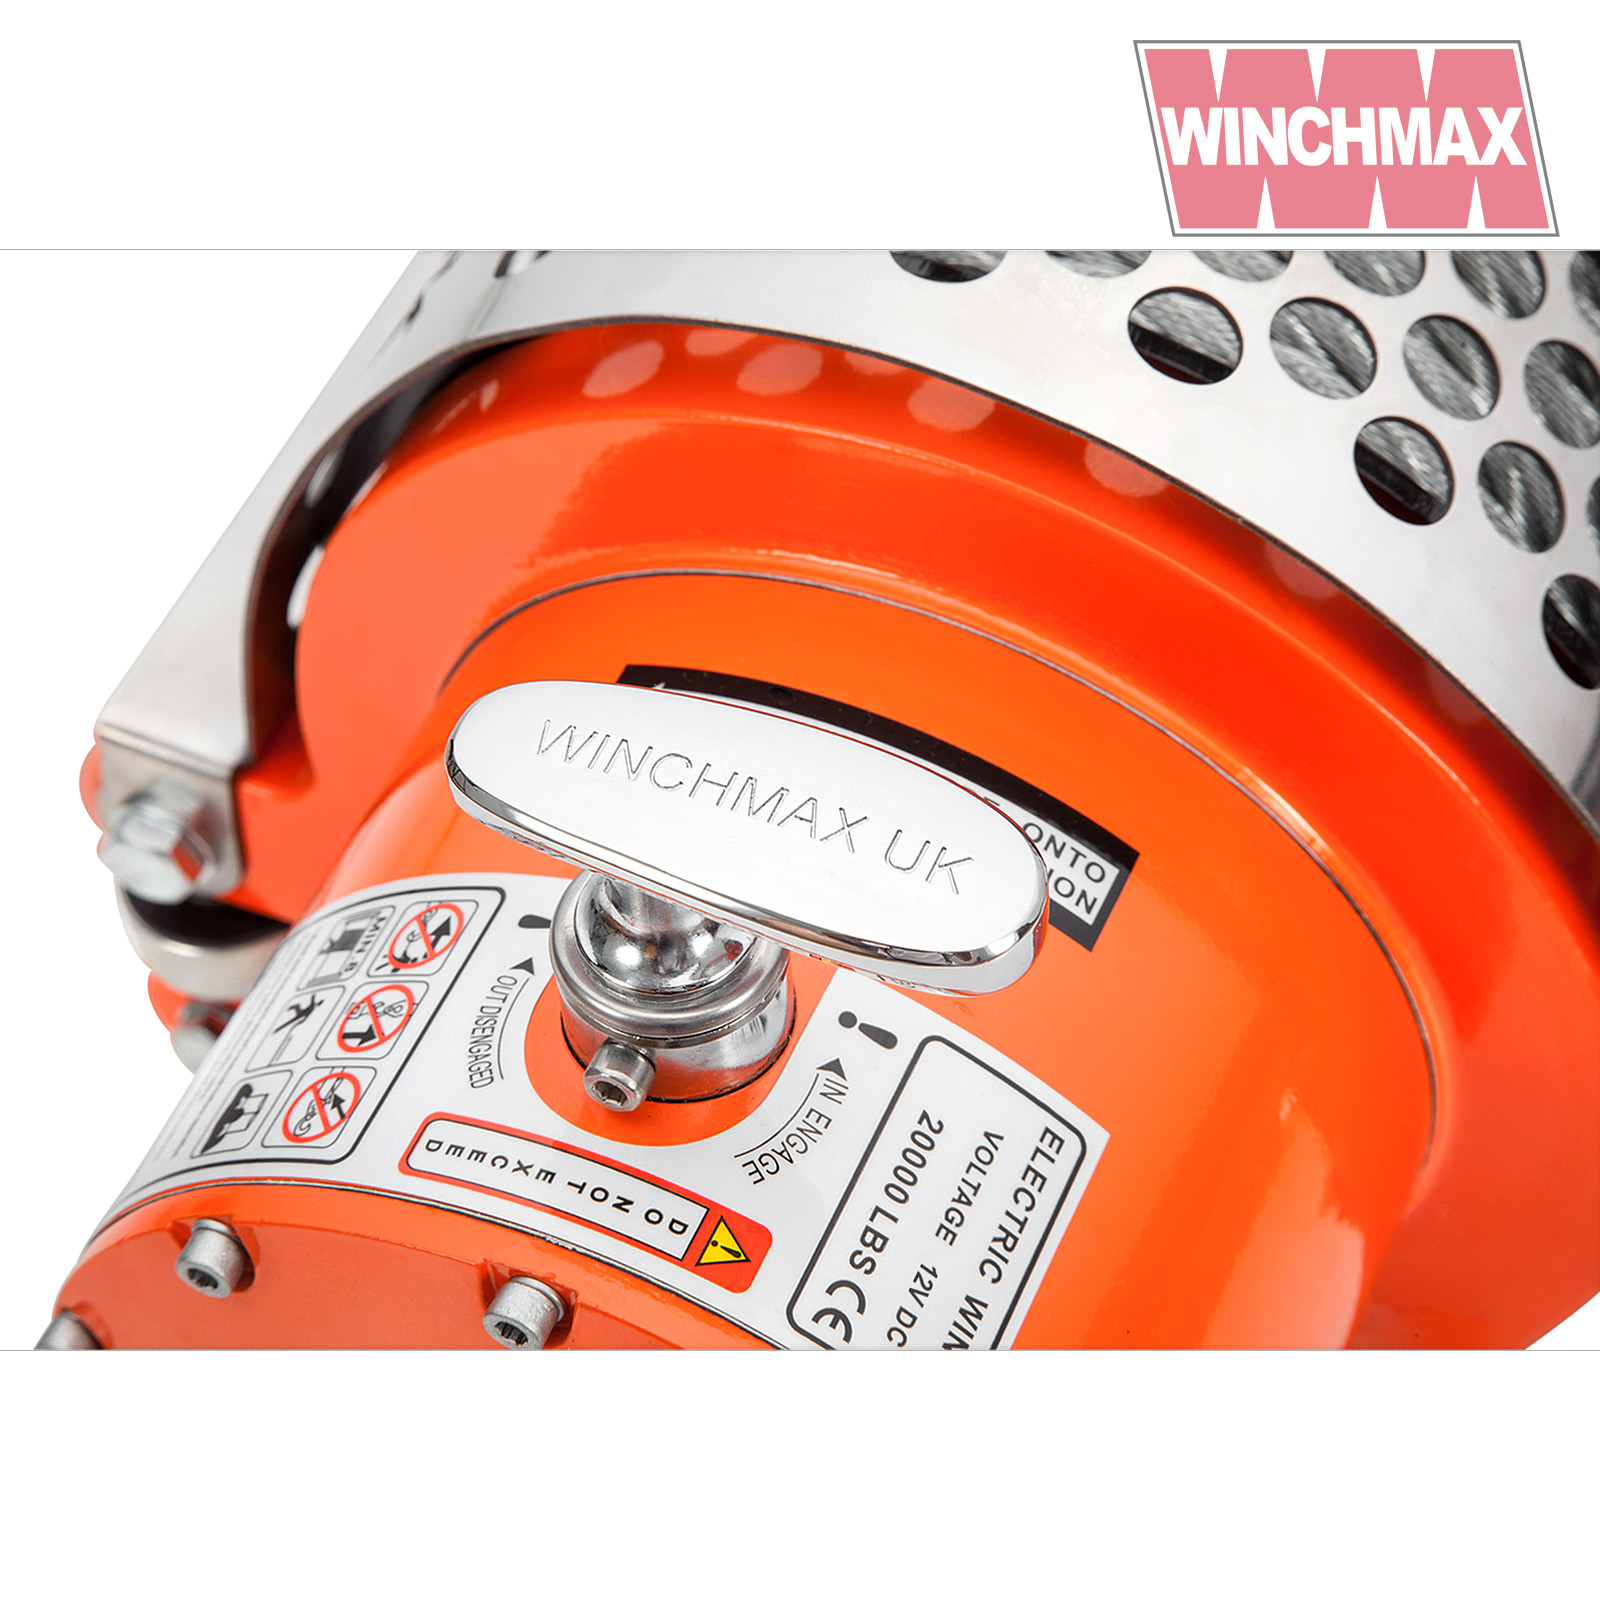 WINCHMAX. 20 Liter Edelstahltank. Kraftstoff, Benzin, Diesel, Wasser.  Standardmodell. : : Automotive